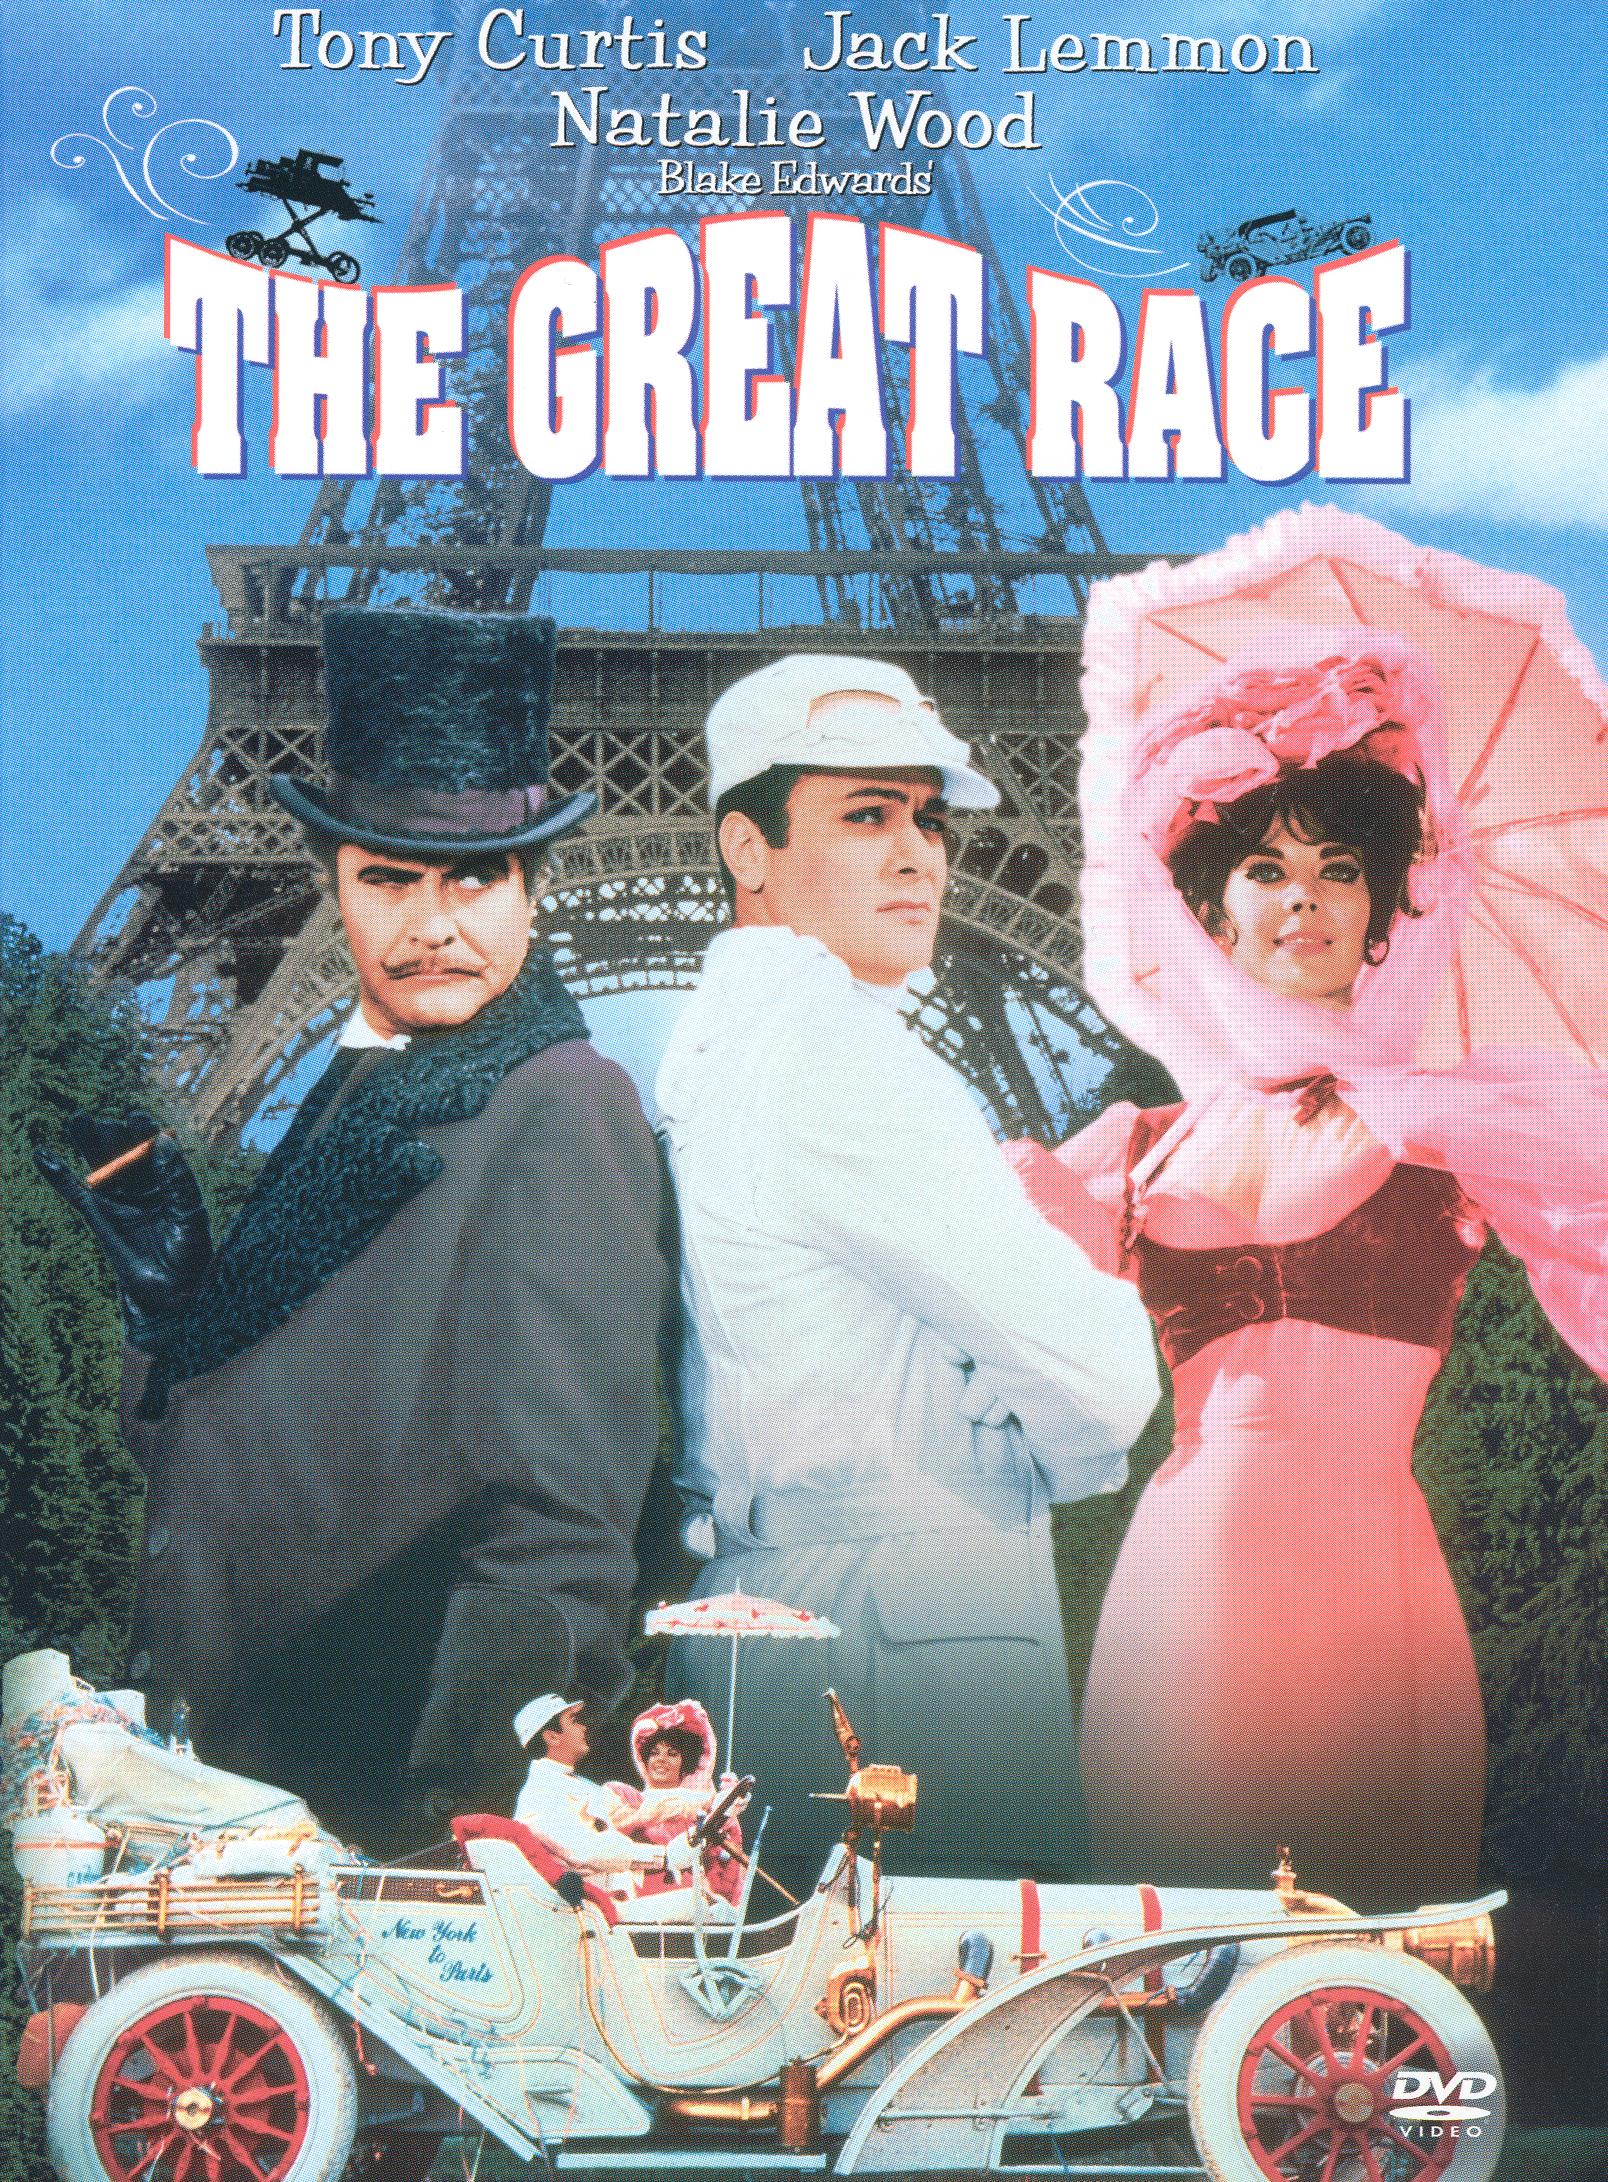 The Great Race [DVD] [1965] - Best Buy